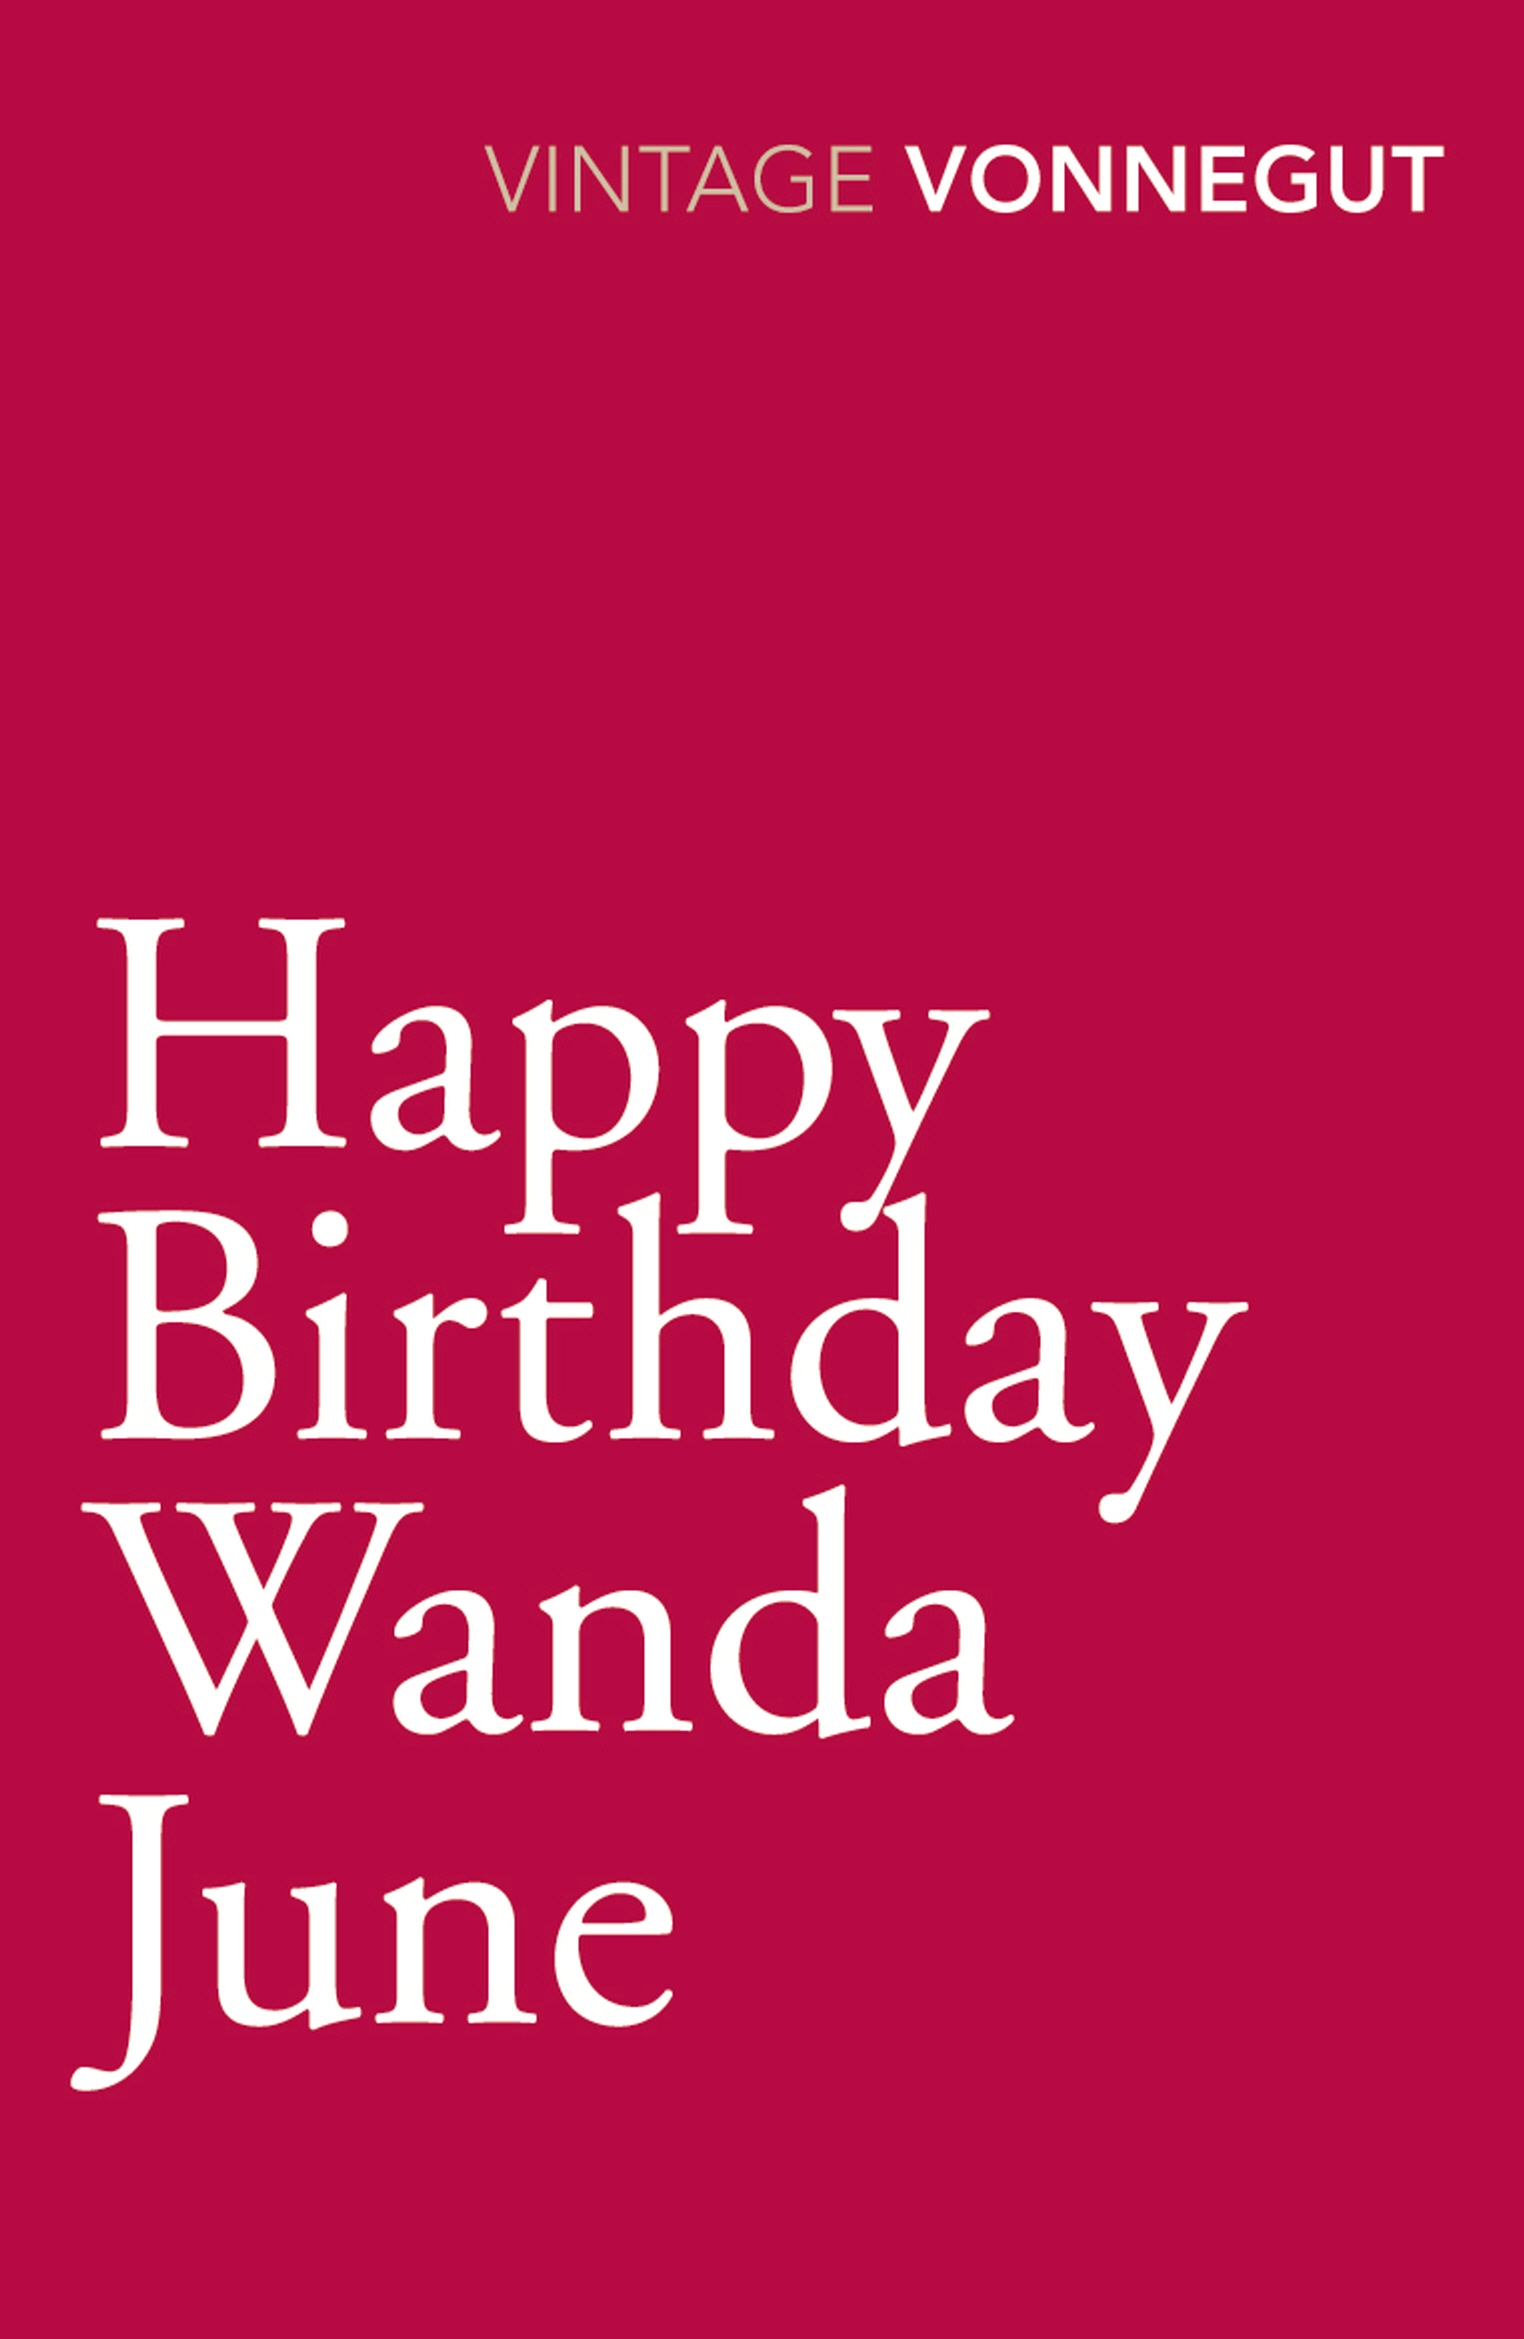 Happy Birthday, Wanda June by Kurt Vonnegut - Penguin Books Australia